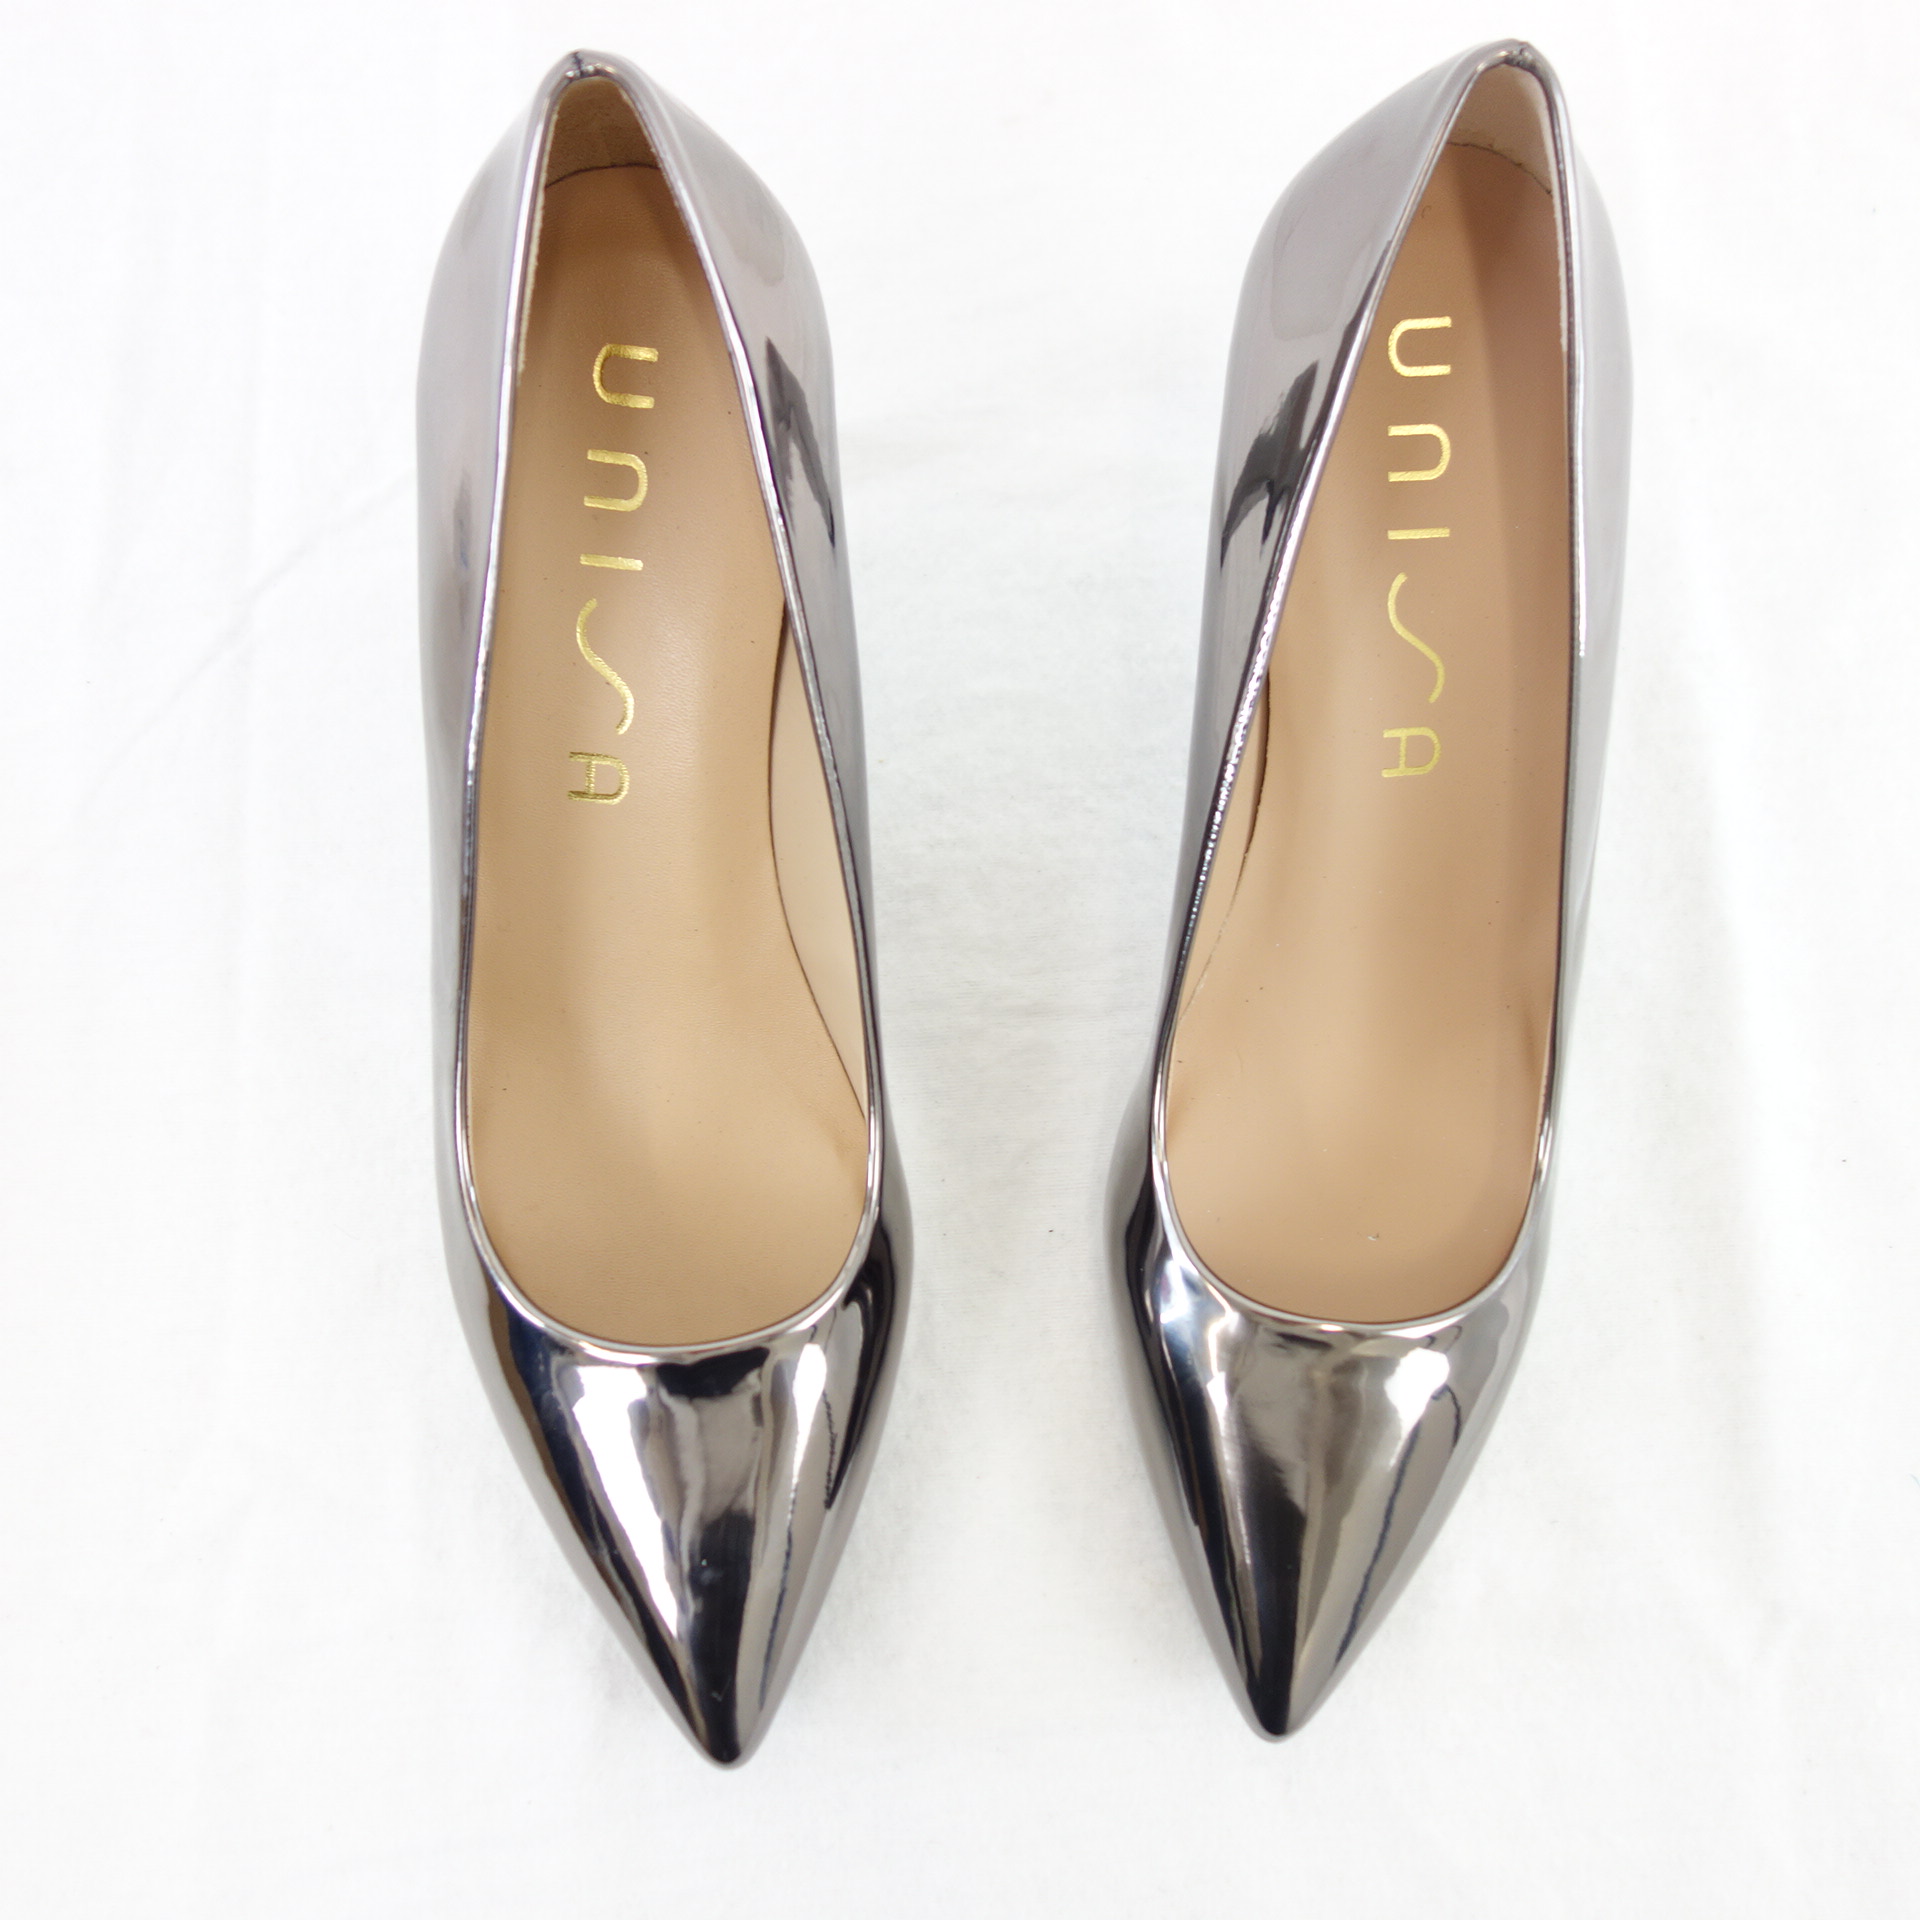 UNISA Damen Schuhe Pumps Stiletto Absat Silber Leder Modell Tola Größe 39 Verspiegelt